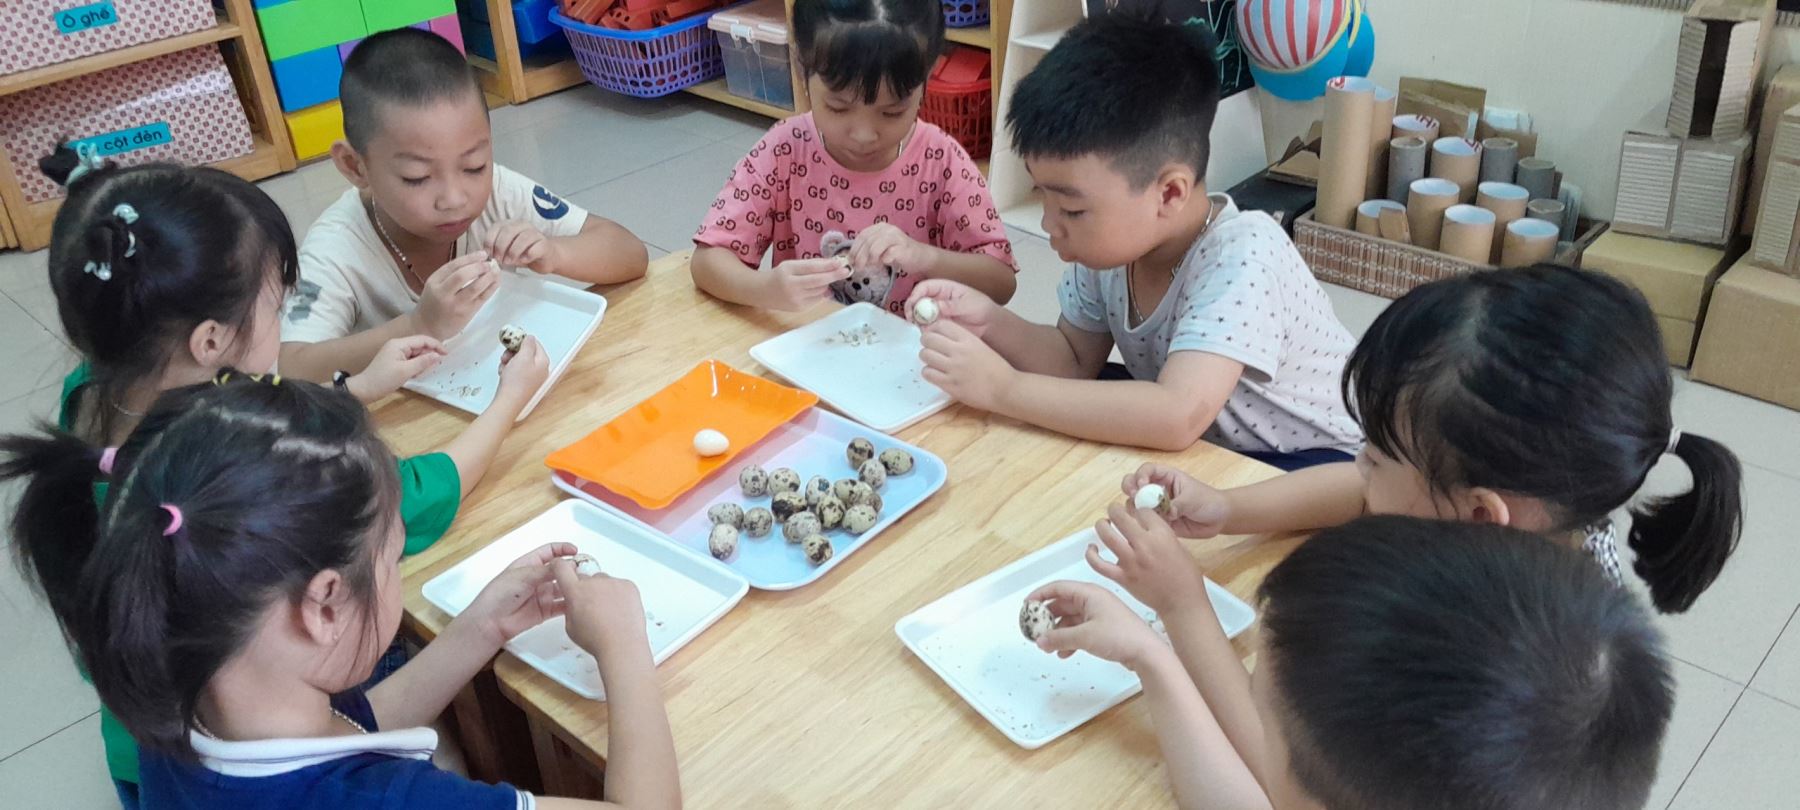 Lớp MGL A1 - Chúng con hôm nay được cô giáo hướng dẫn cách bóc trứng chim cút. Chúng con giúp các bác cấp dưỡng, để các bác chế biến món ăn: Trứng cút kho thịt cho chúng con ăn đấy!